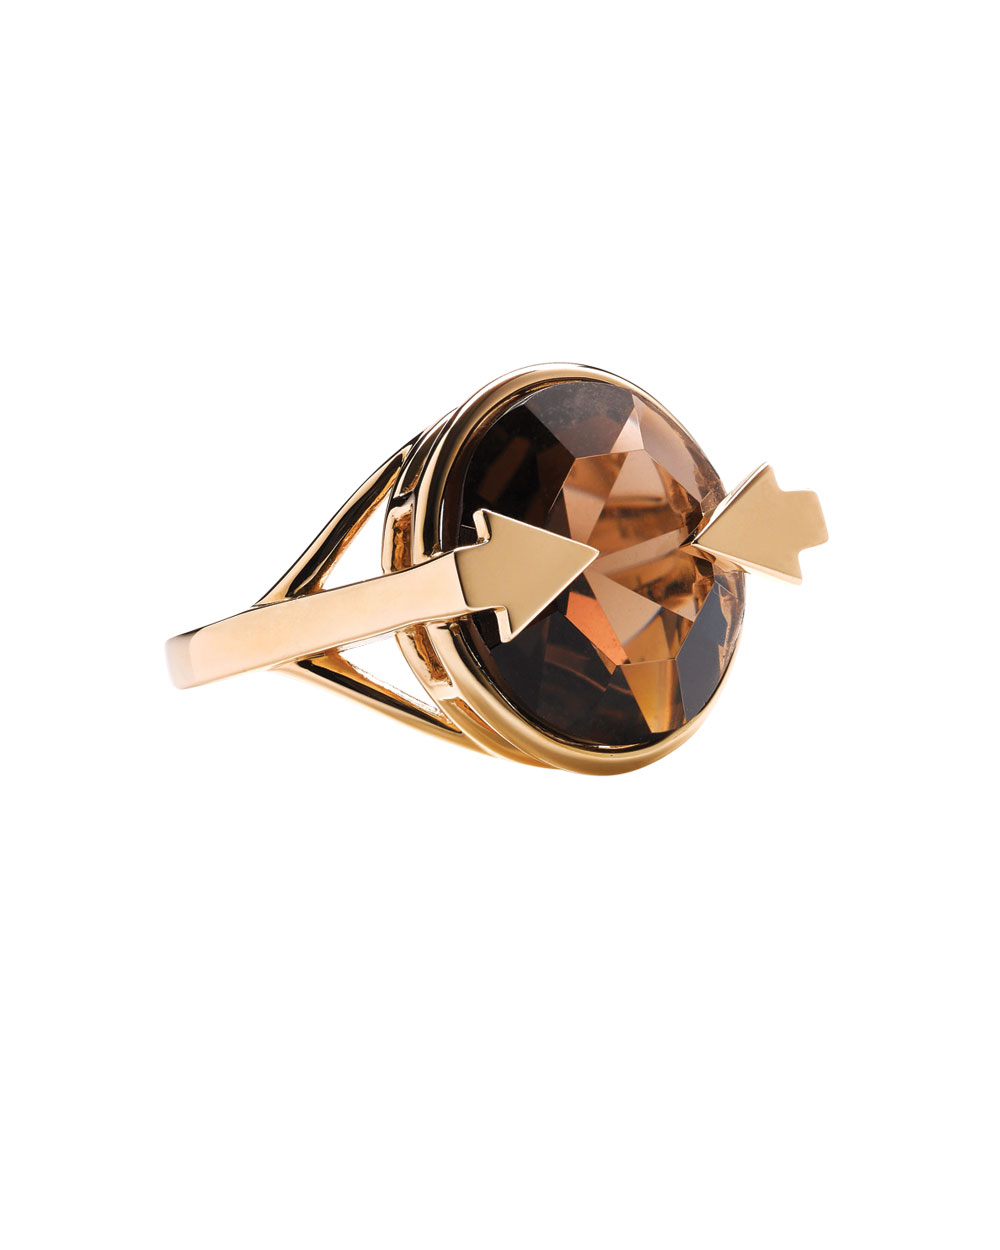 Karen Walker Jewellery ring, $1139